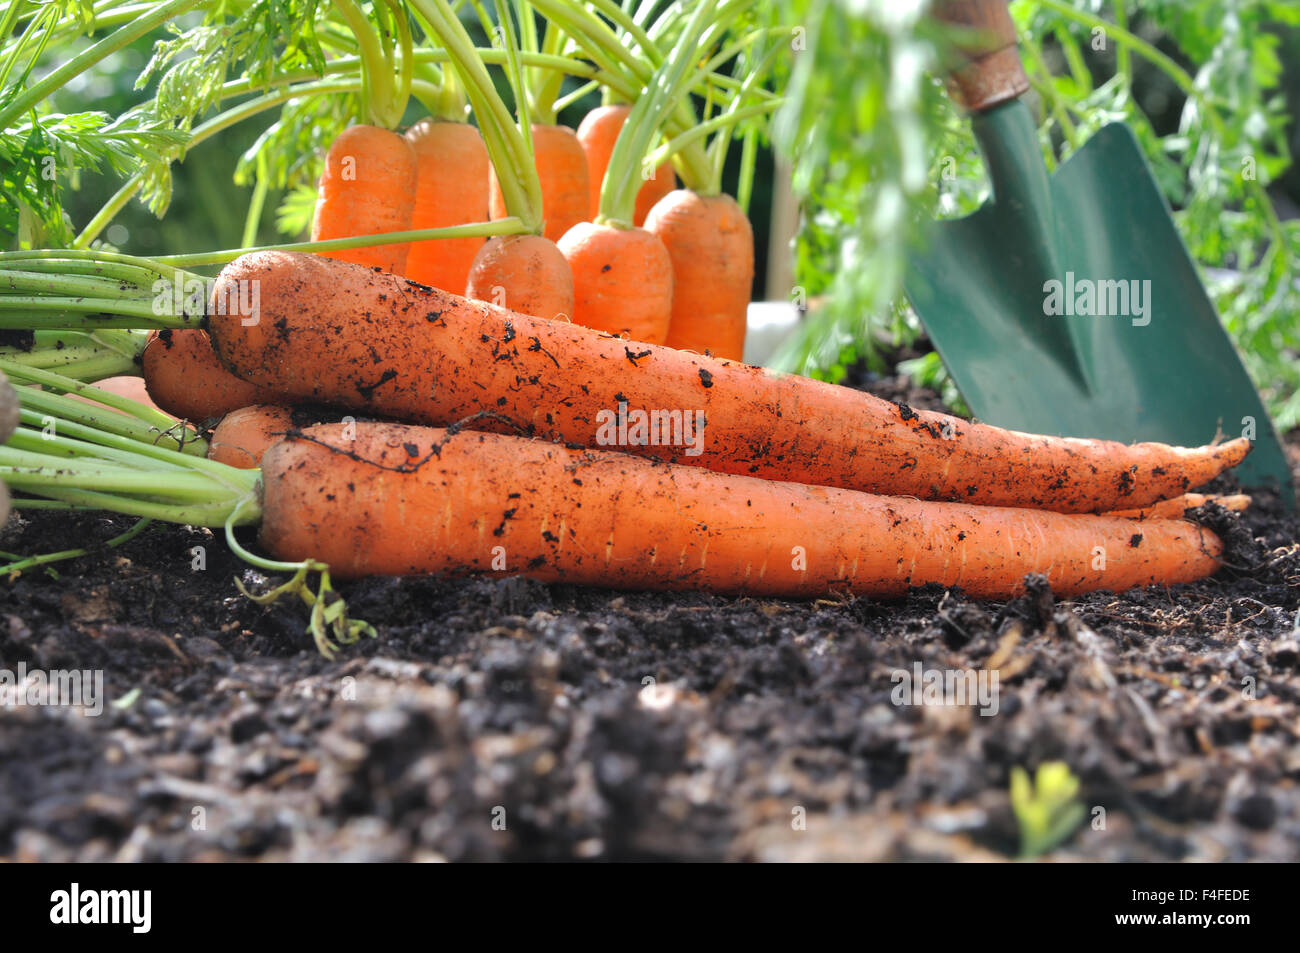 Appena raccolto le carote nel suolo di giardino Foto Stock